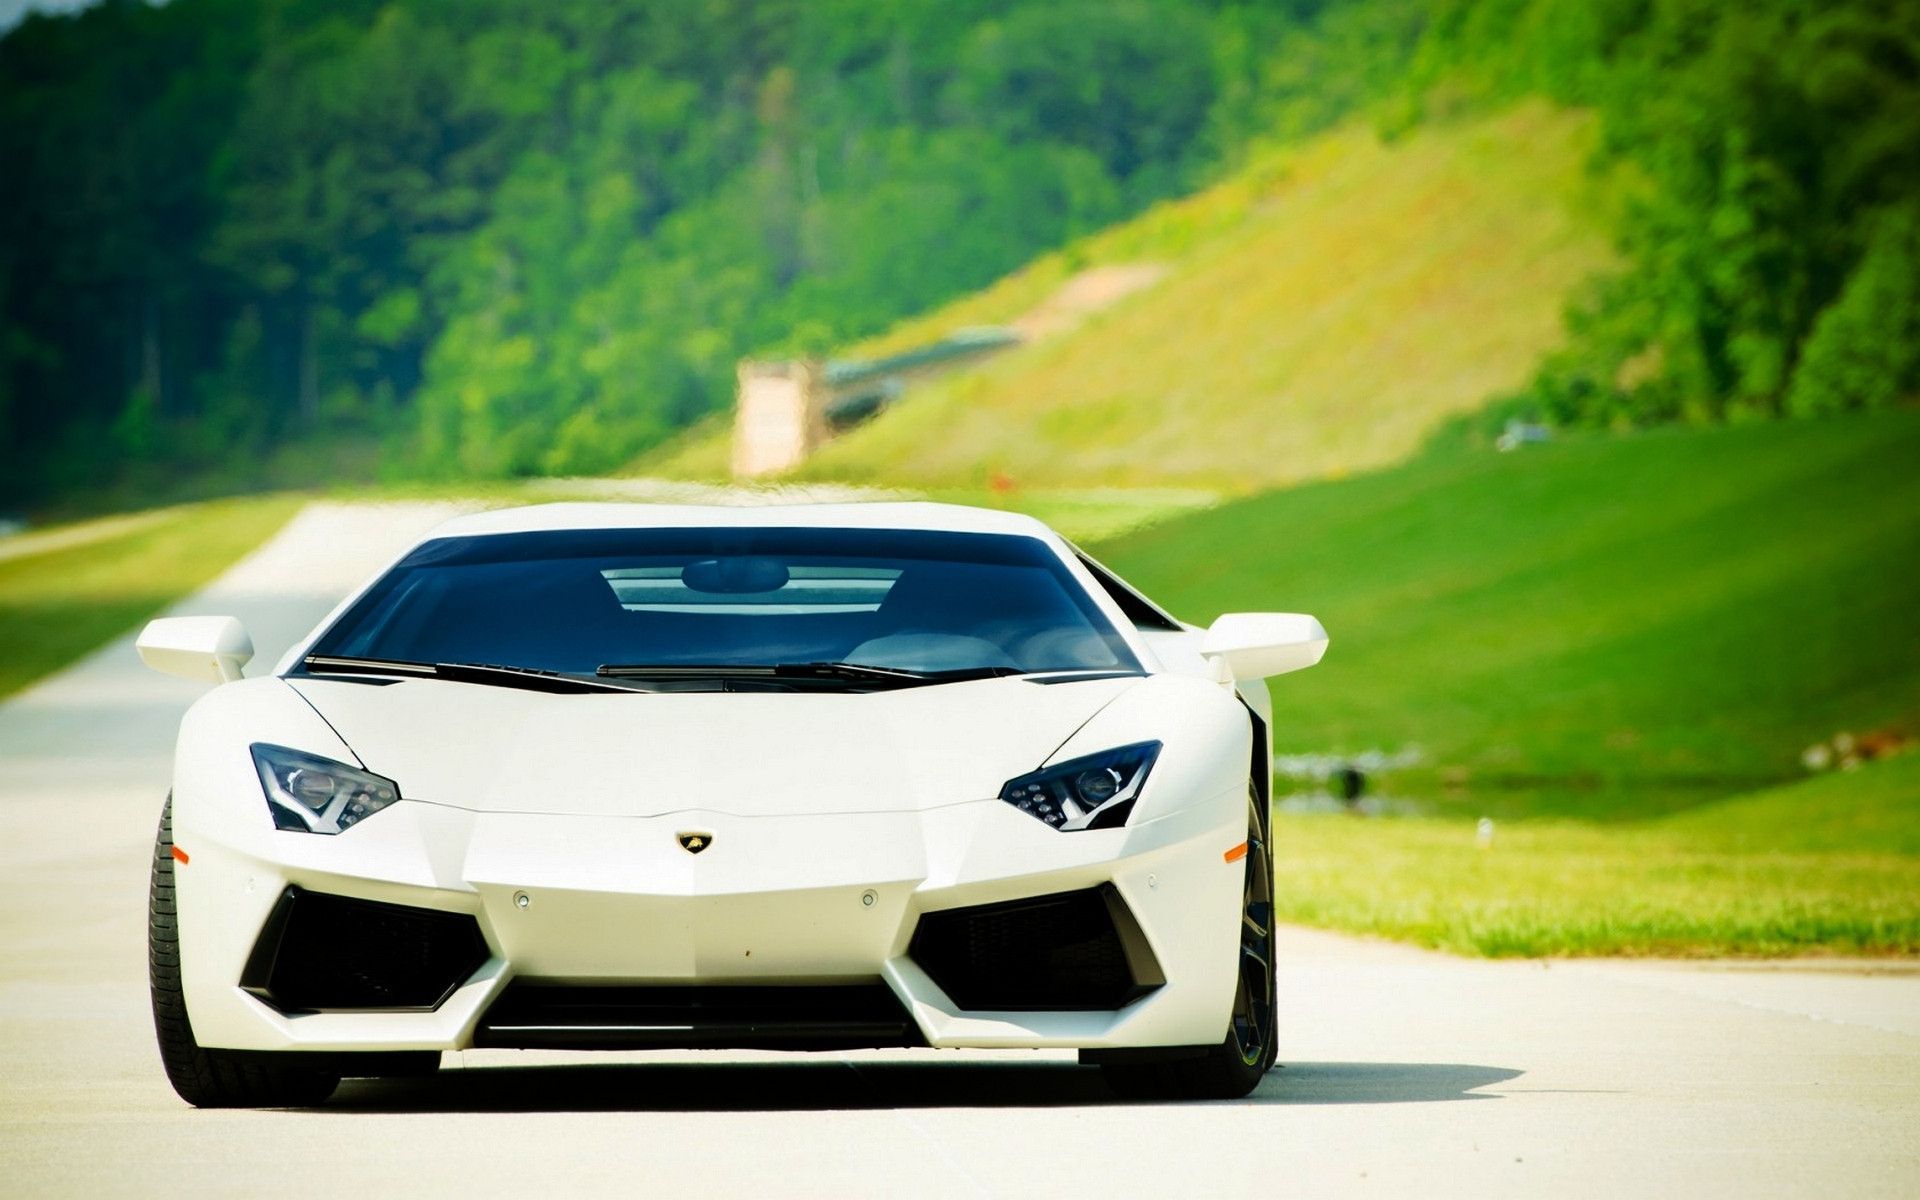 Lamborghini Cars Wallpaper HD Motors Image